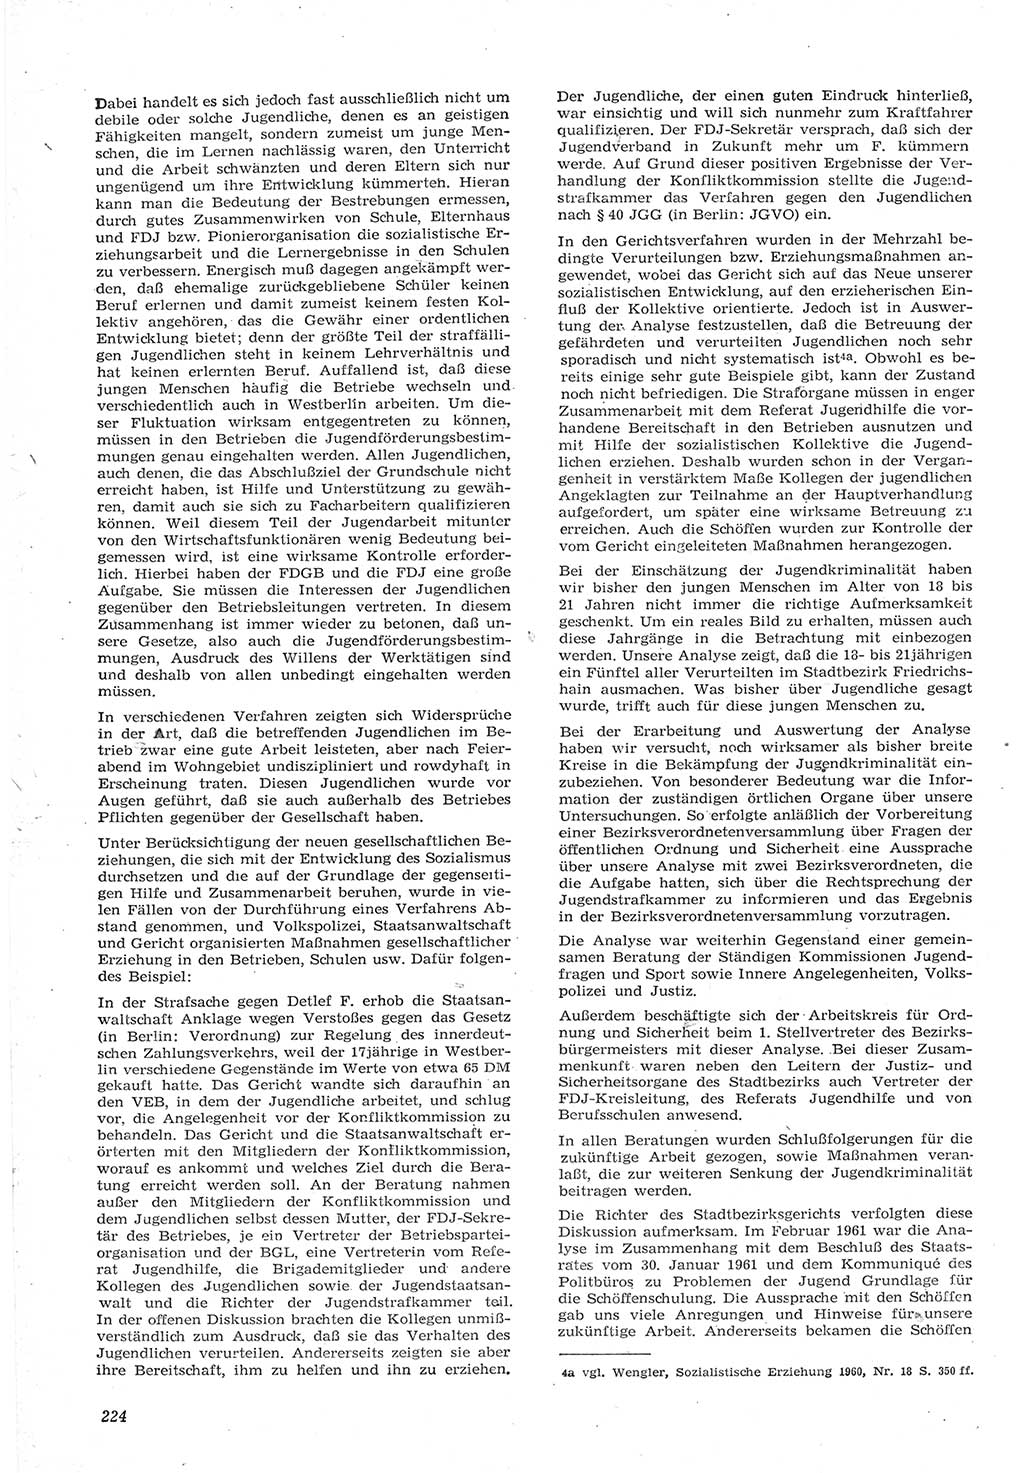 Neue Justiz (NJ), Zeitschrift für Recht und Rechtswissenschaft [Deutsche Demokratische Republik (DDR)], 15. Jahrgang 1961, Seite 224 (NJ DDR 1961, S. 224)